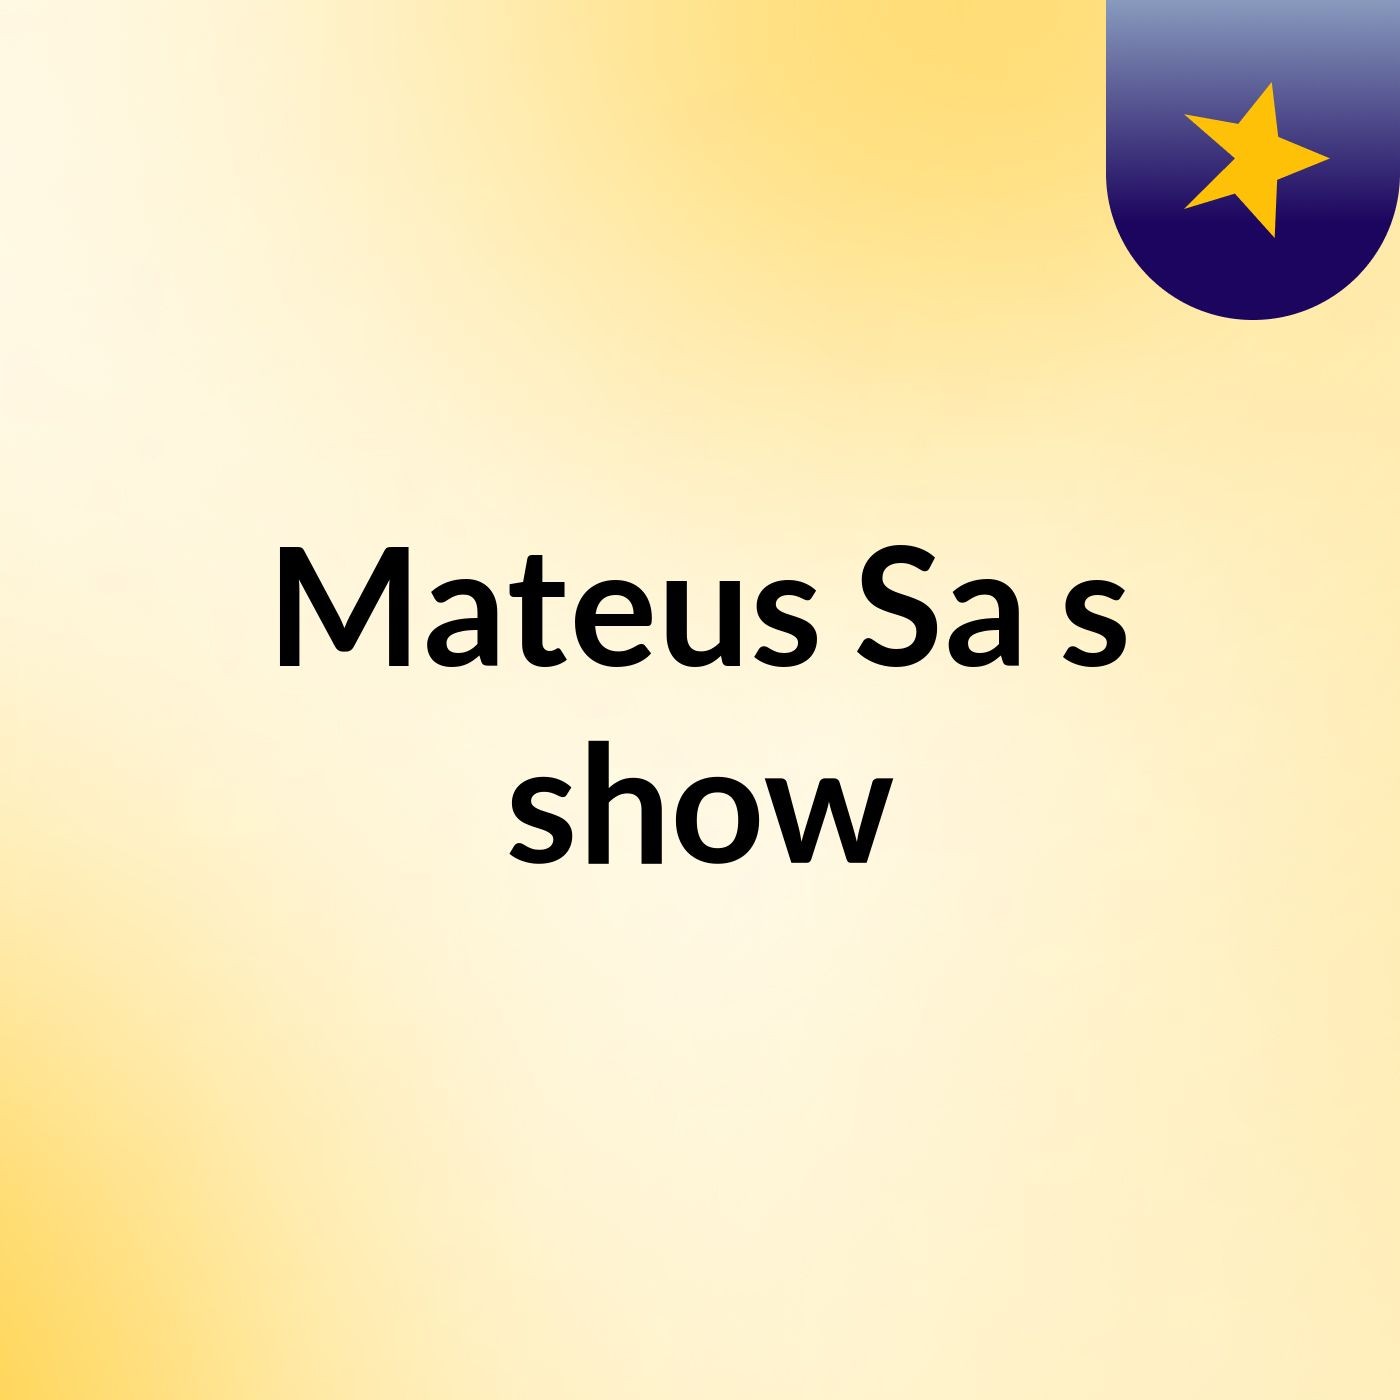 Mateus Sa's show